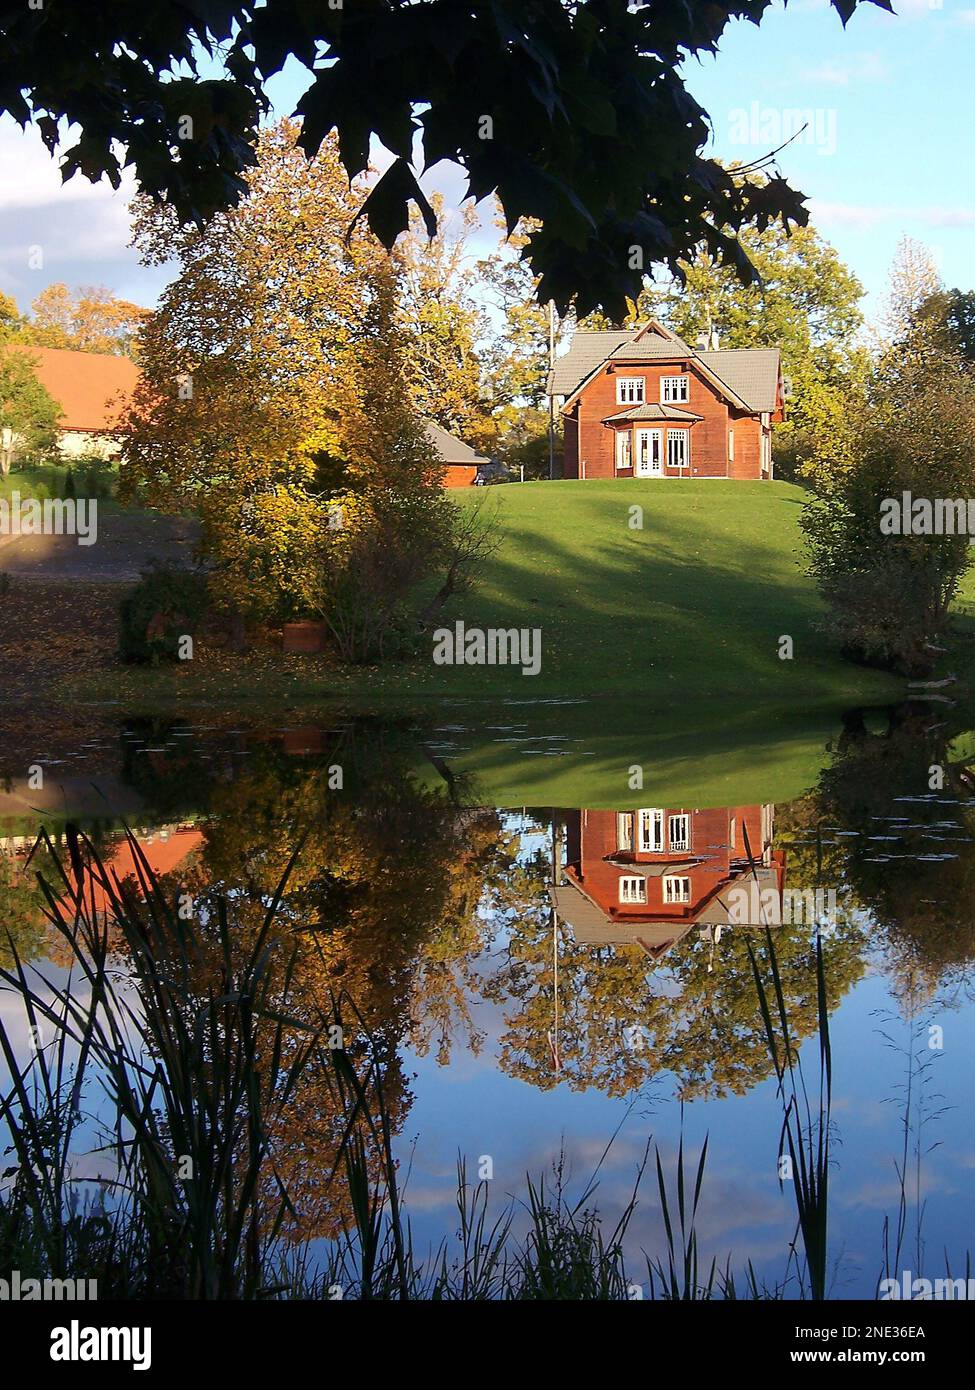 Ein kleines rotes Haus auf einem grünen Hügel spiegelt sich in der Spiegelfläche des Teichs wider. Stockfoto